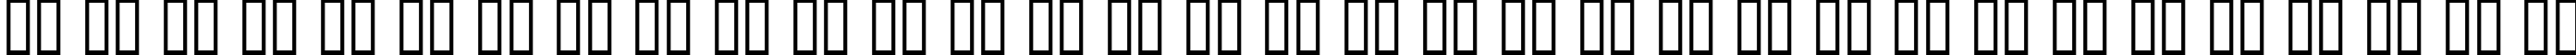 Пример написания русского алфавита шрифтом HalfLife